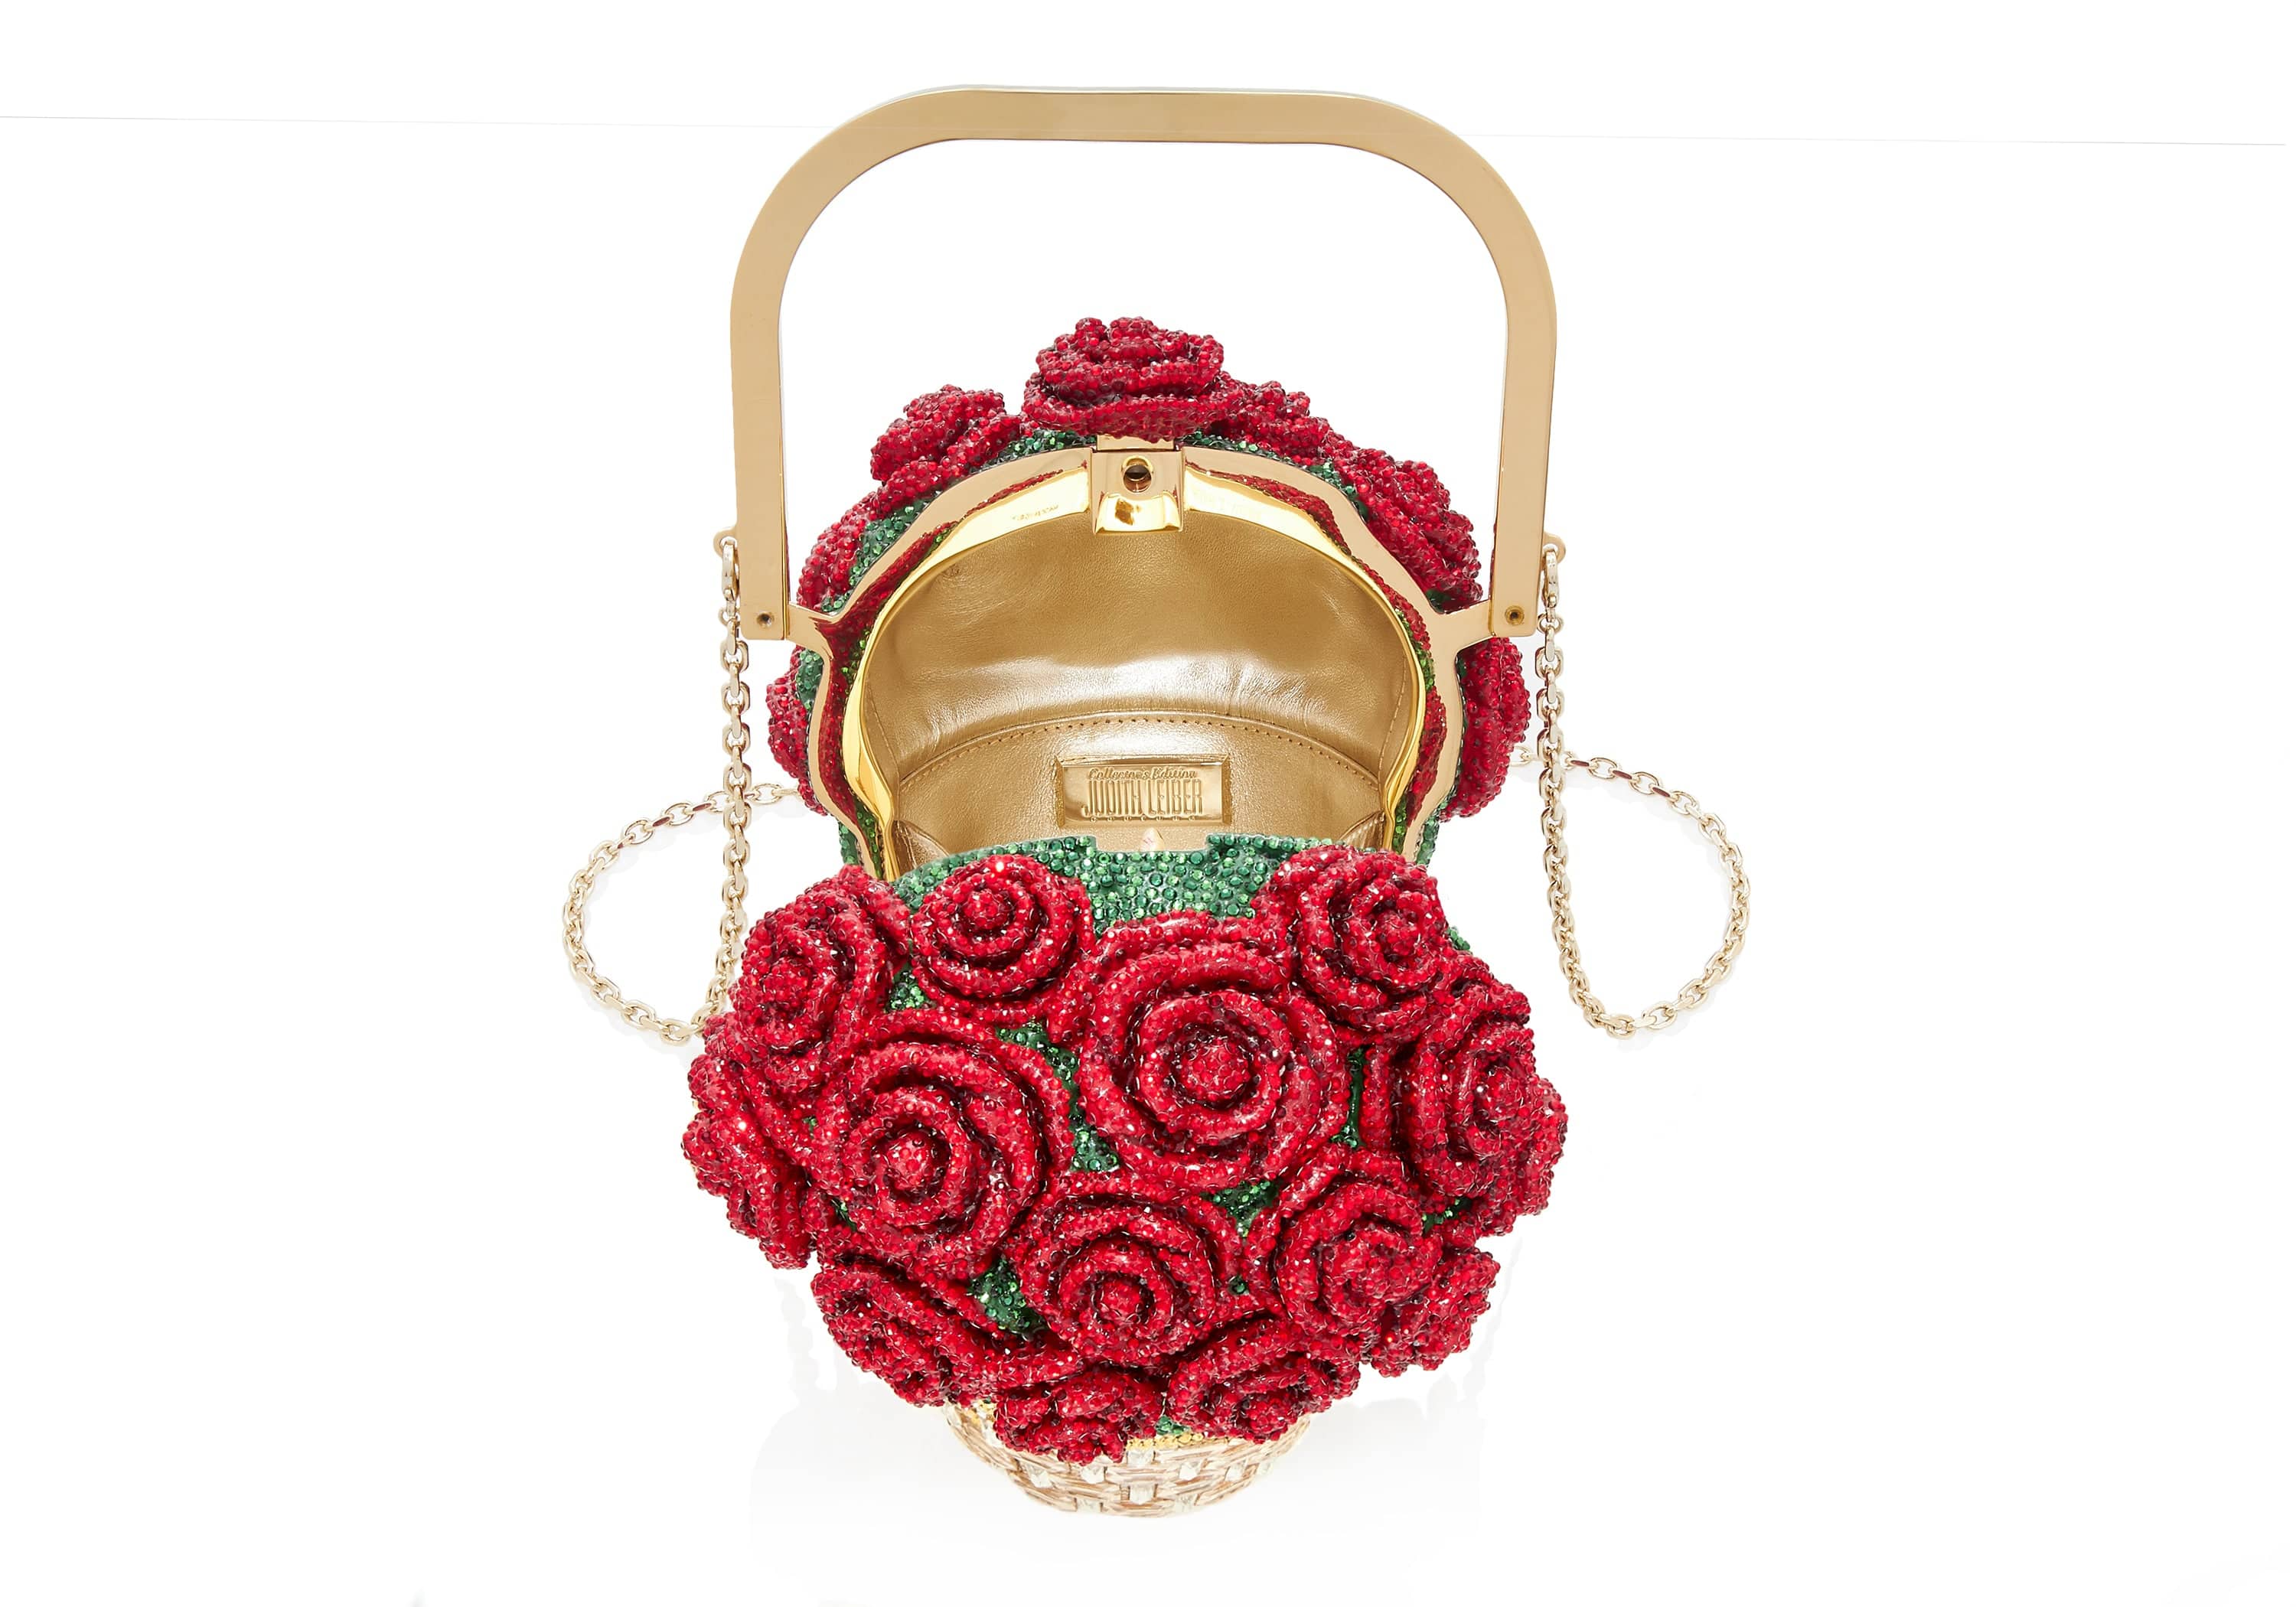 Basket of Roses crystal-embellished gold-tone clutch